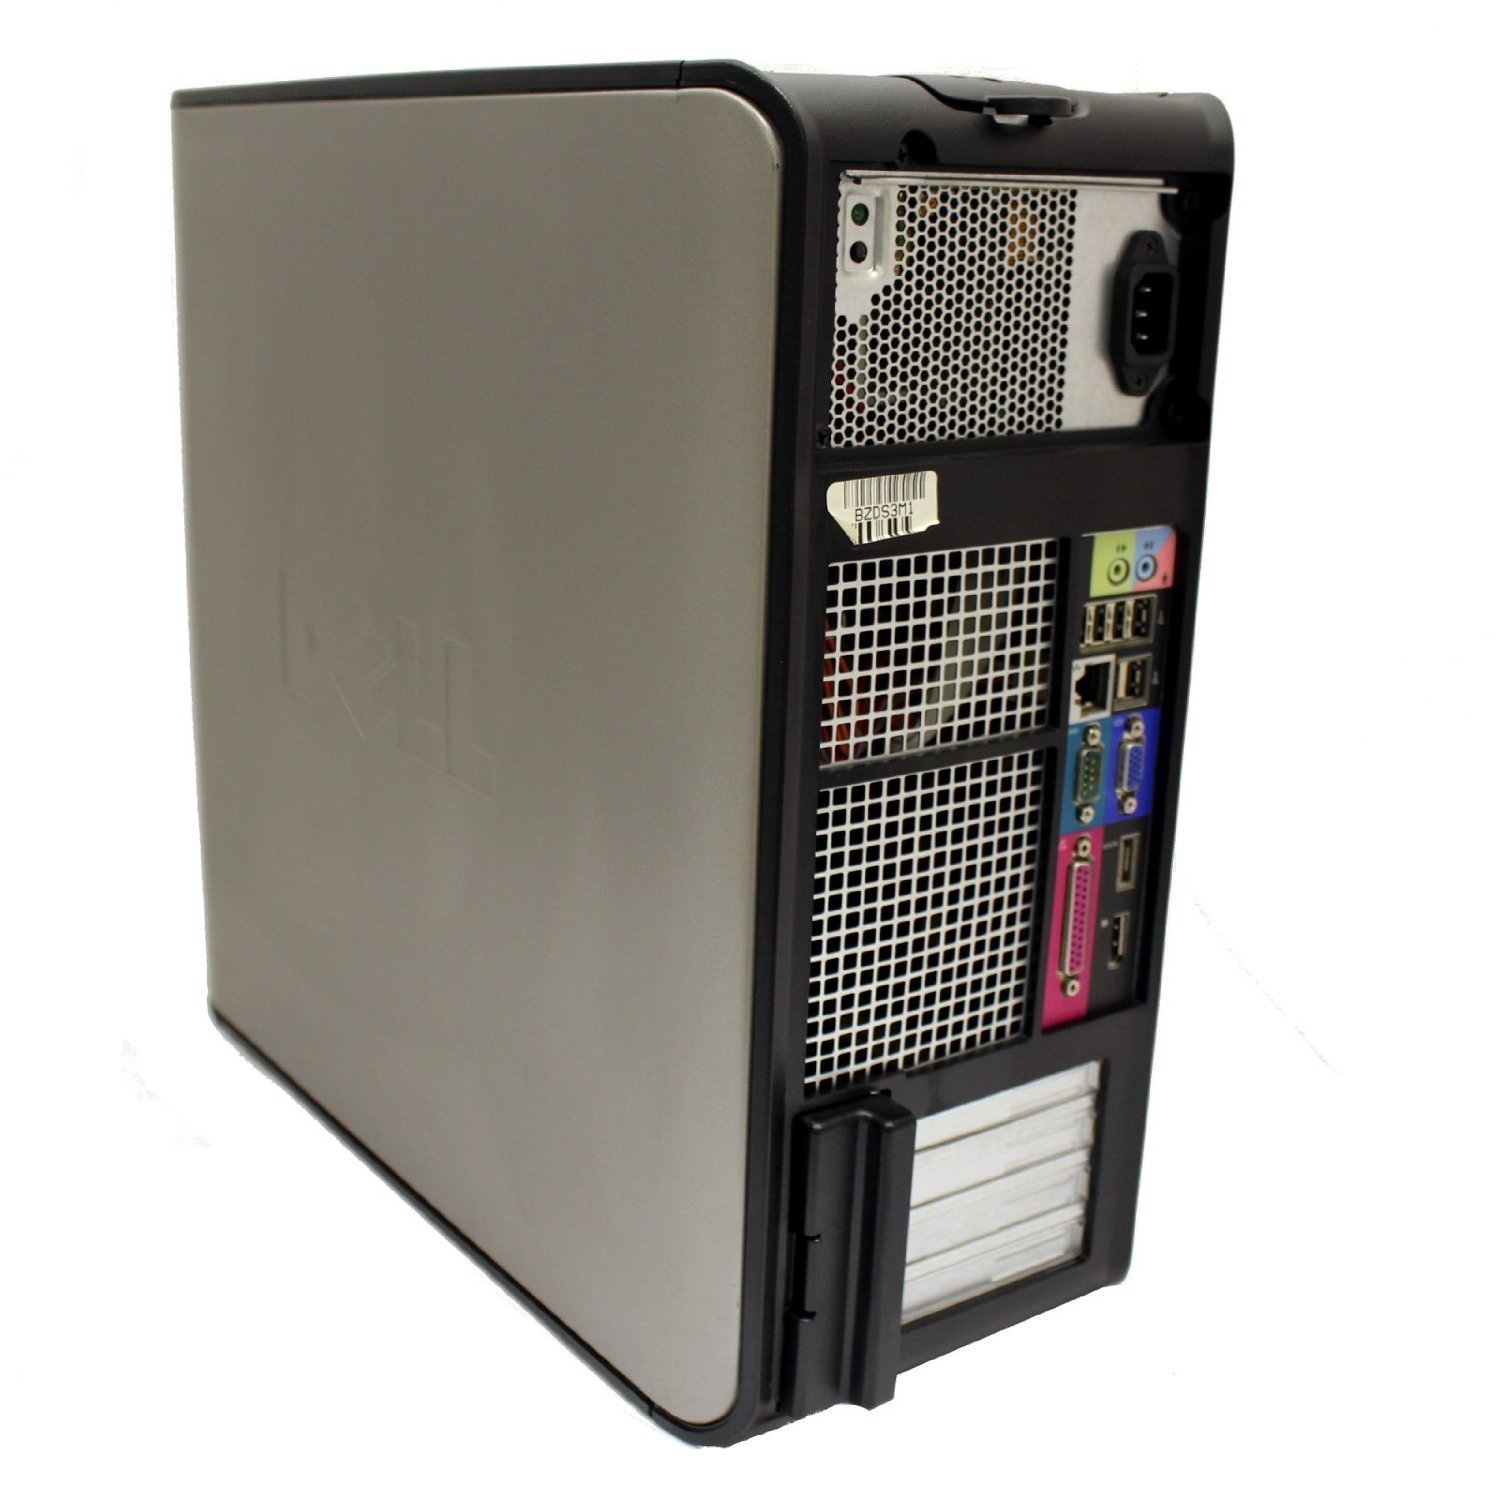 Dell Optiplex 780 Mini-Tower - Windows 10 Pro - 3.00GHz Intel Core 2 Duo E8400 – 4GB RAM - 160GB HDD